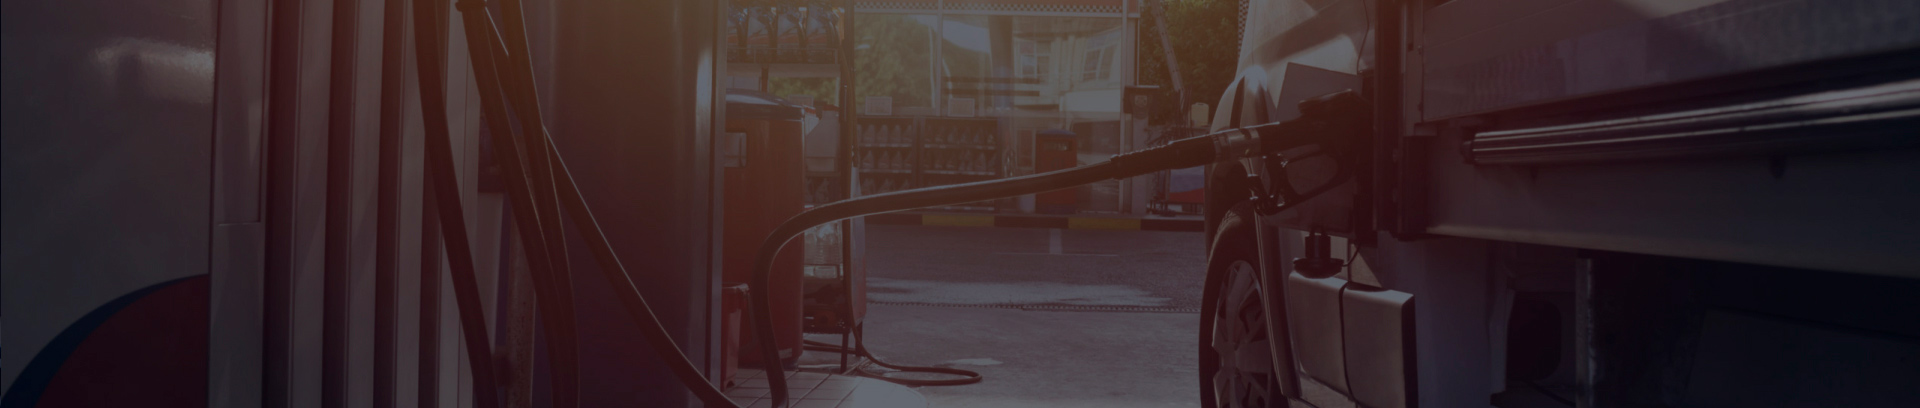 Цены на топливо растут:  как компаниям сокращать расходы на ГСМ в новых условиях